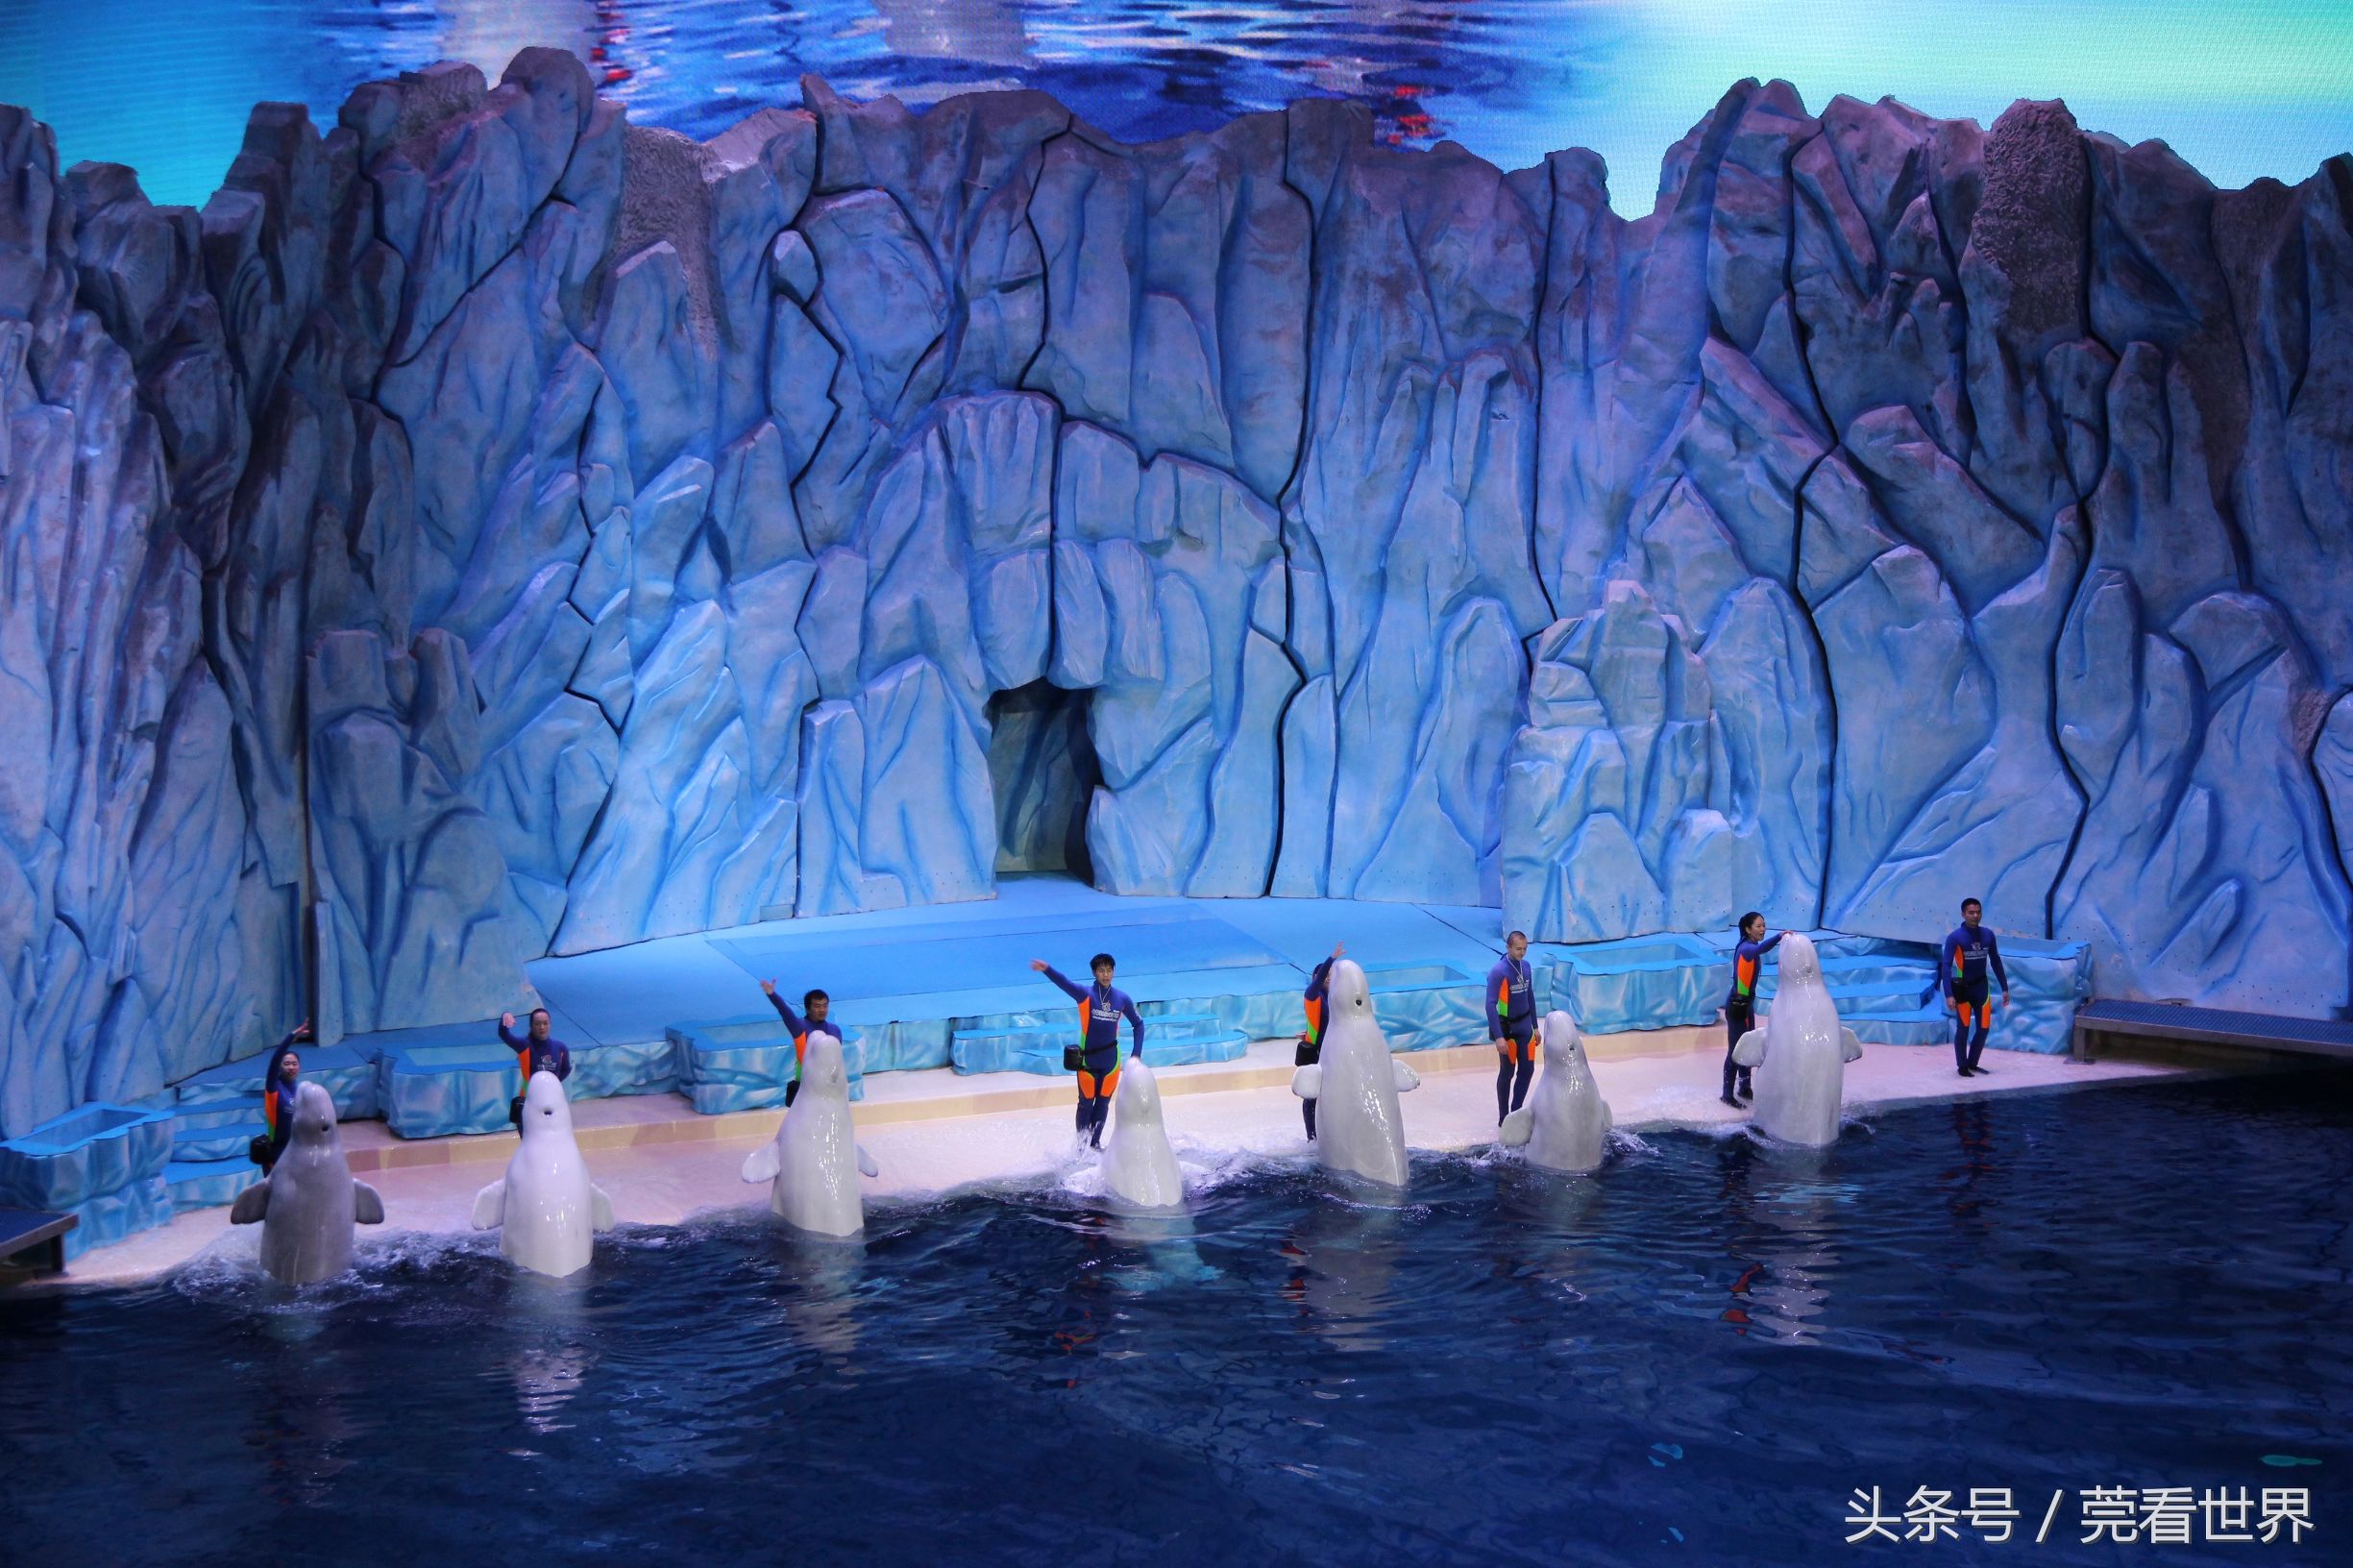 【携程攻略】横滨八景岛海岛乐园景点,白鲸的表演超可爱啊，跳楼机超高，过山车超刺激。